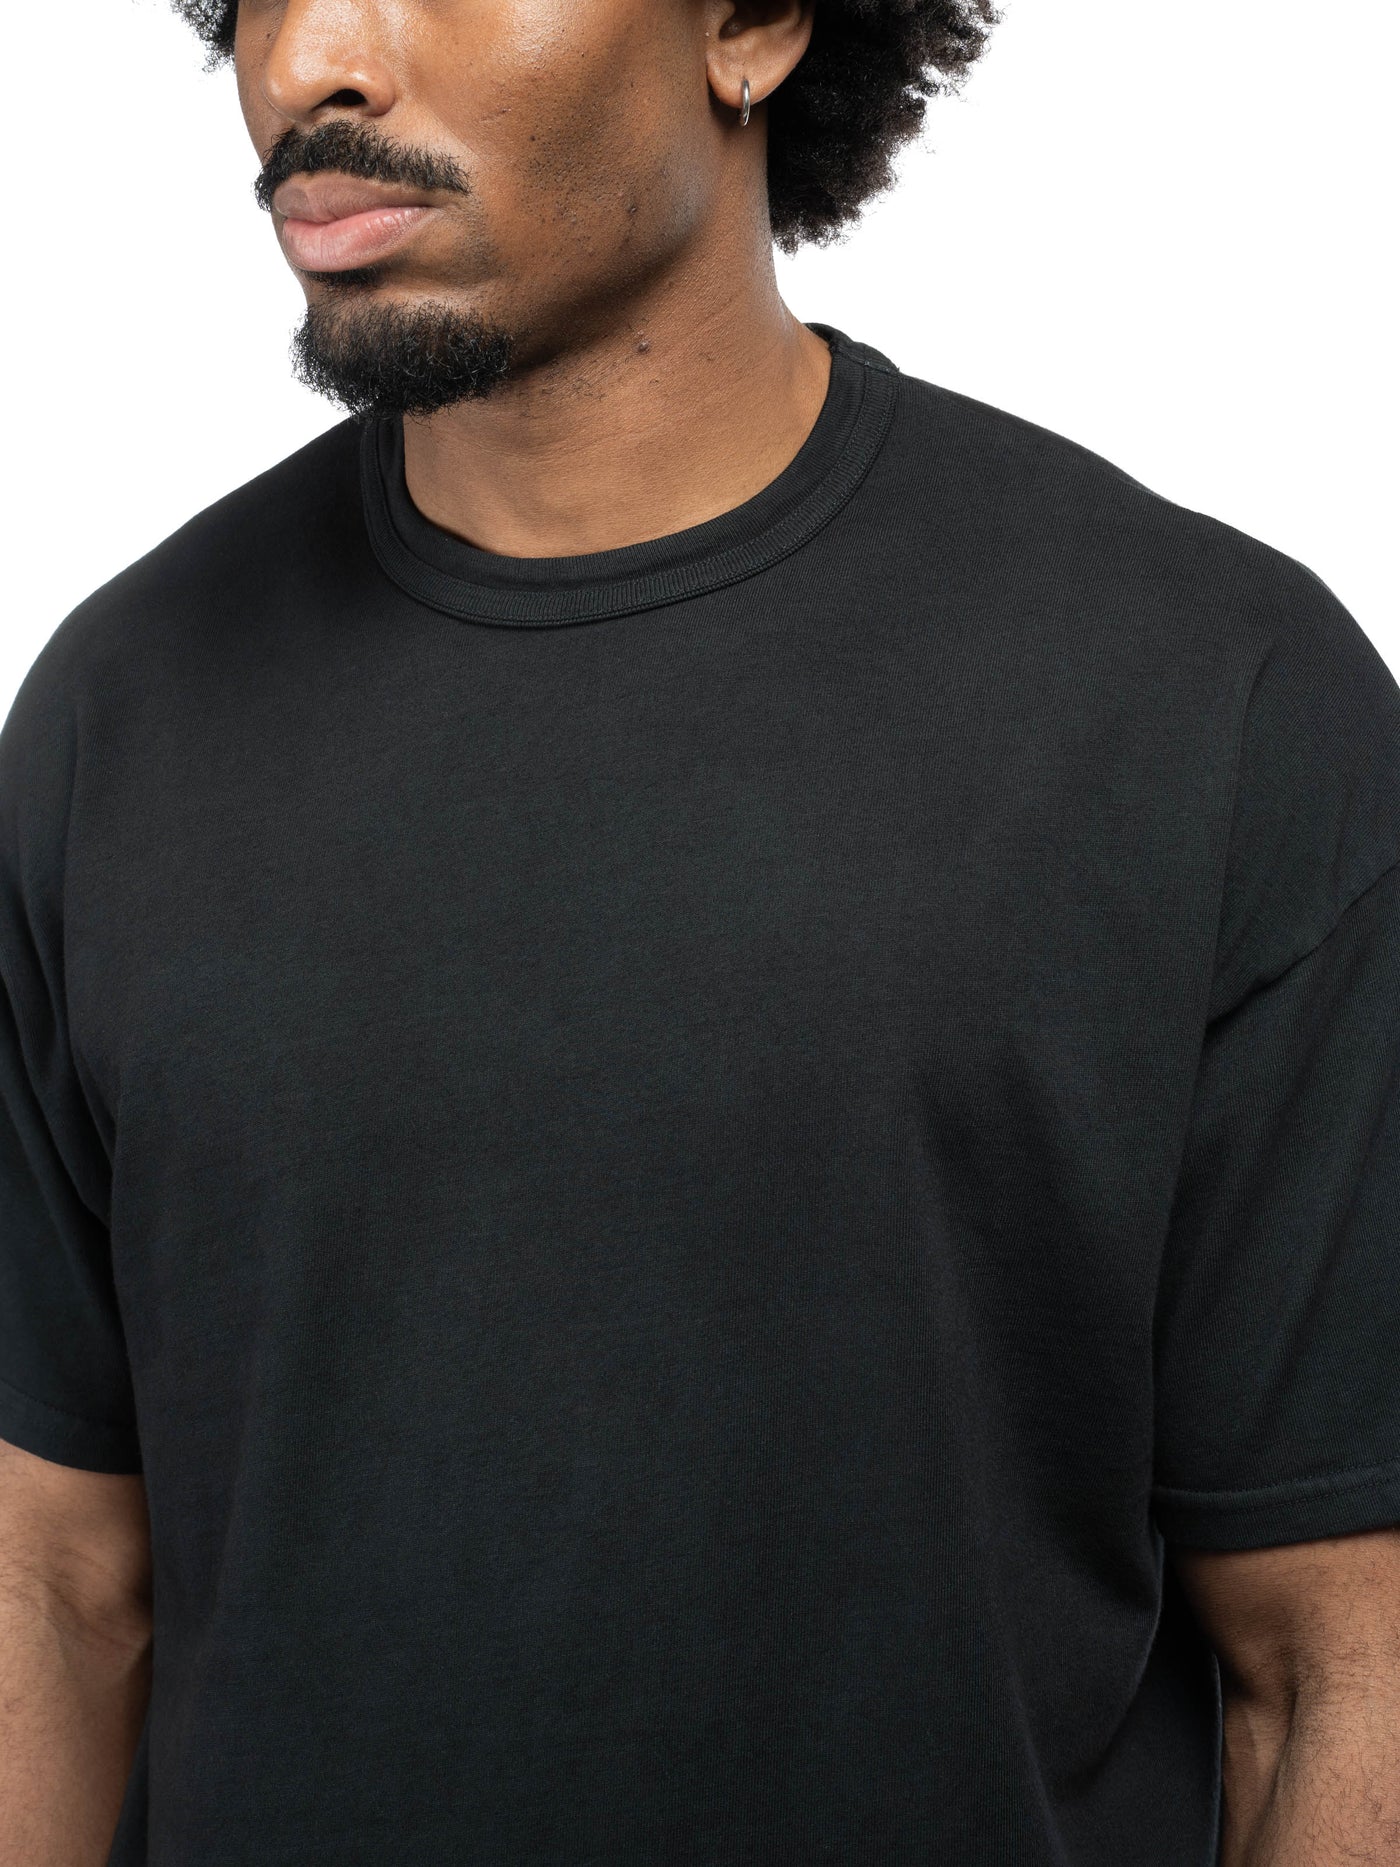 Basics T-Shirt - Aged Black